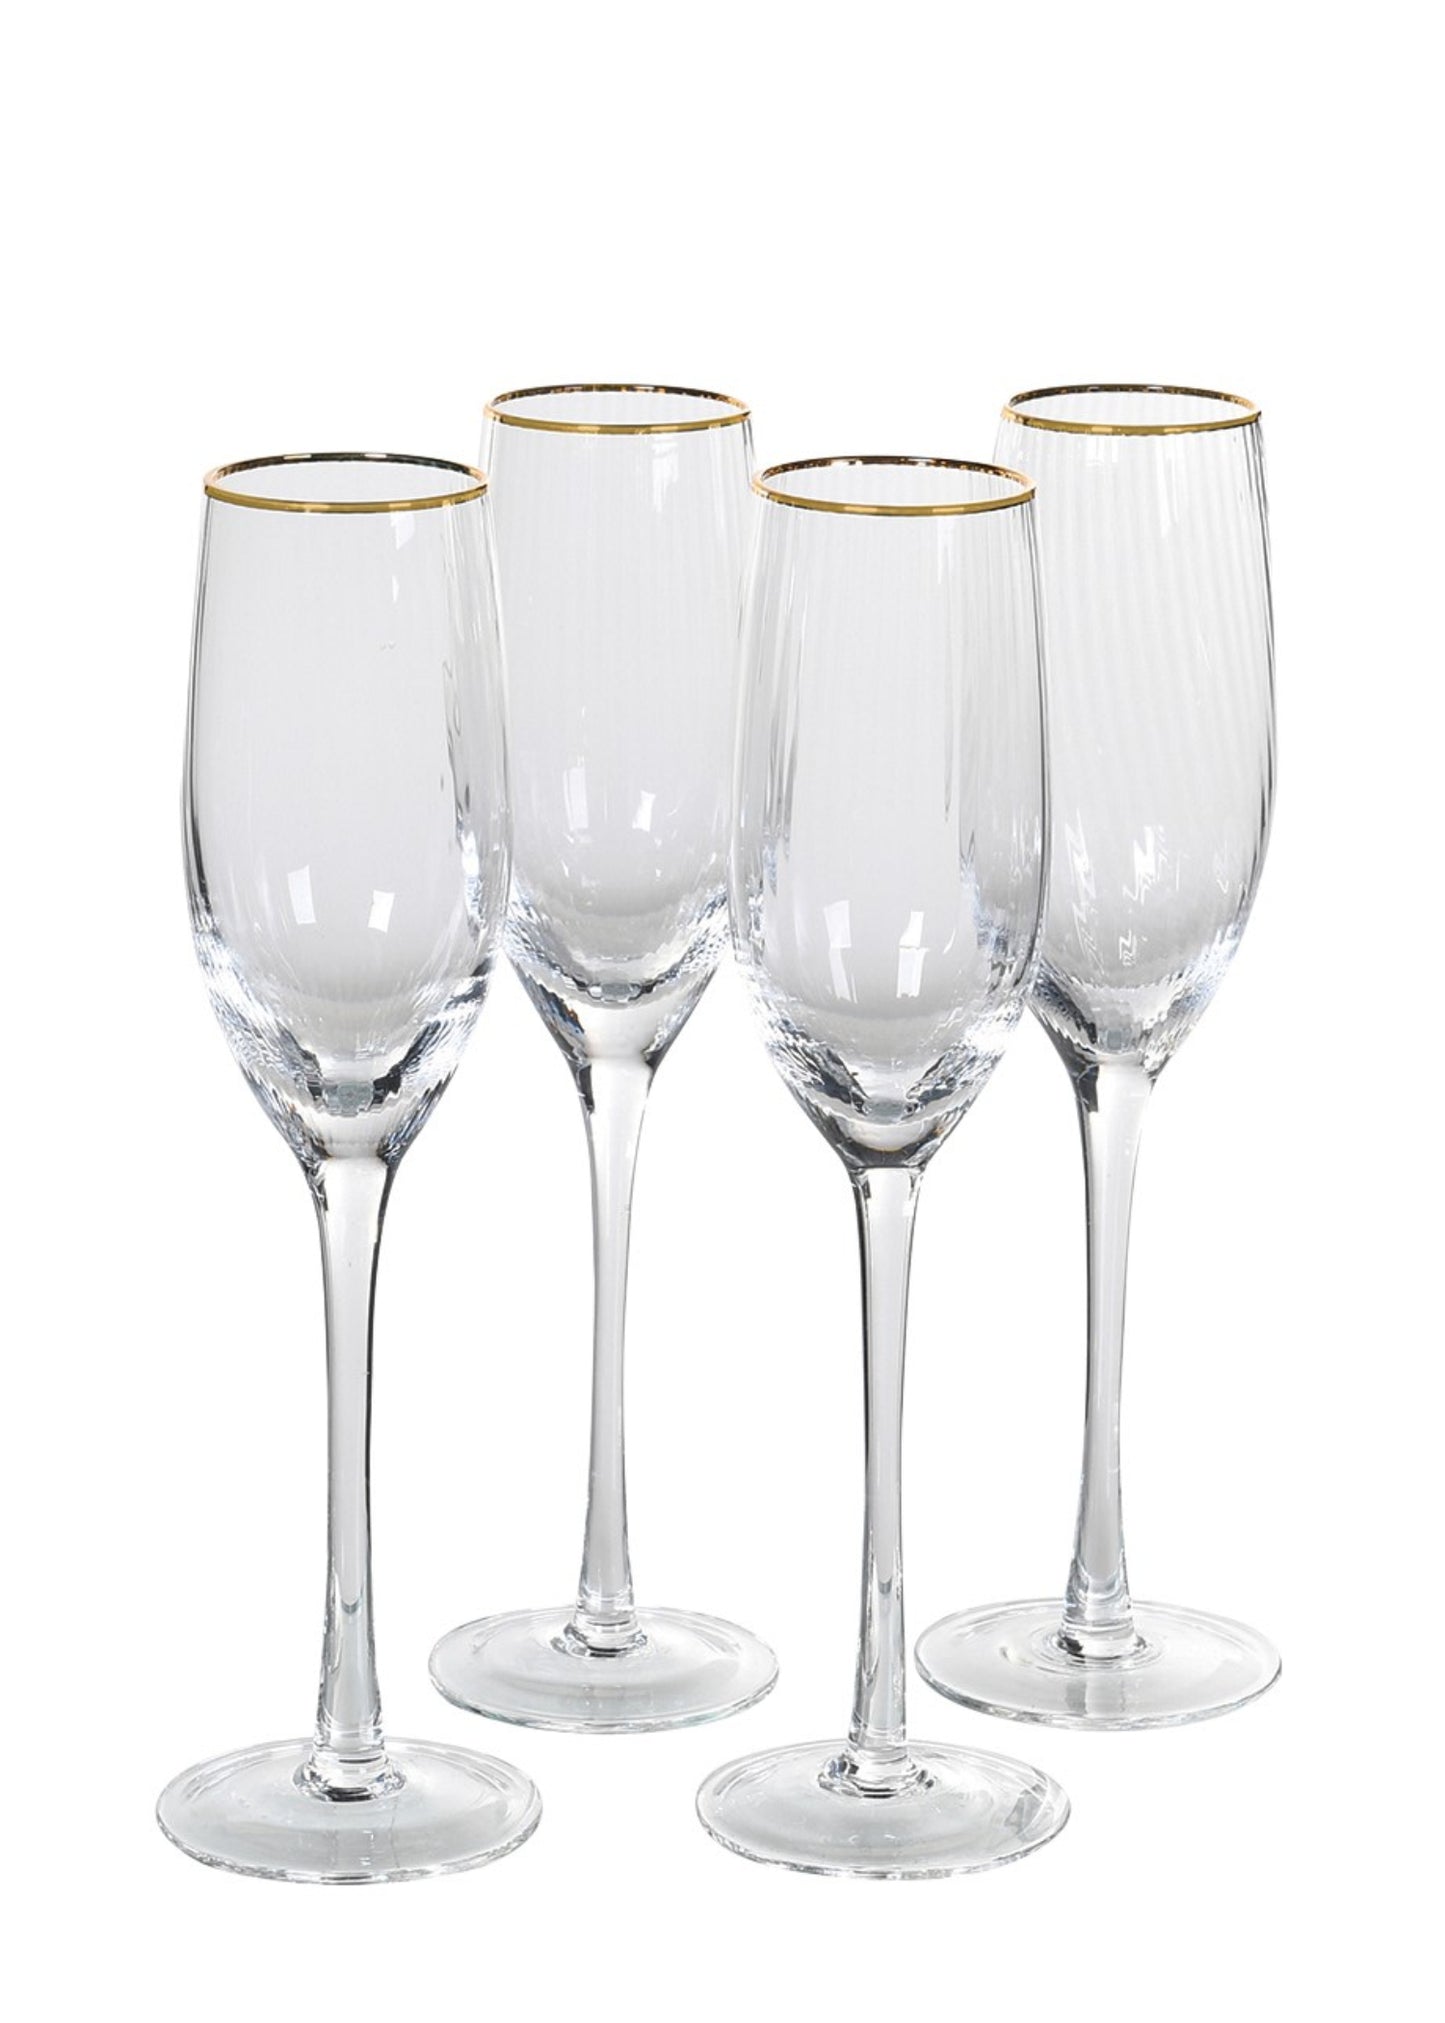 Gold Rim Champagne Glasses